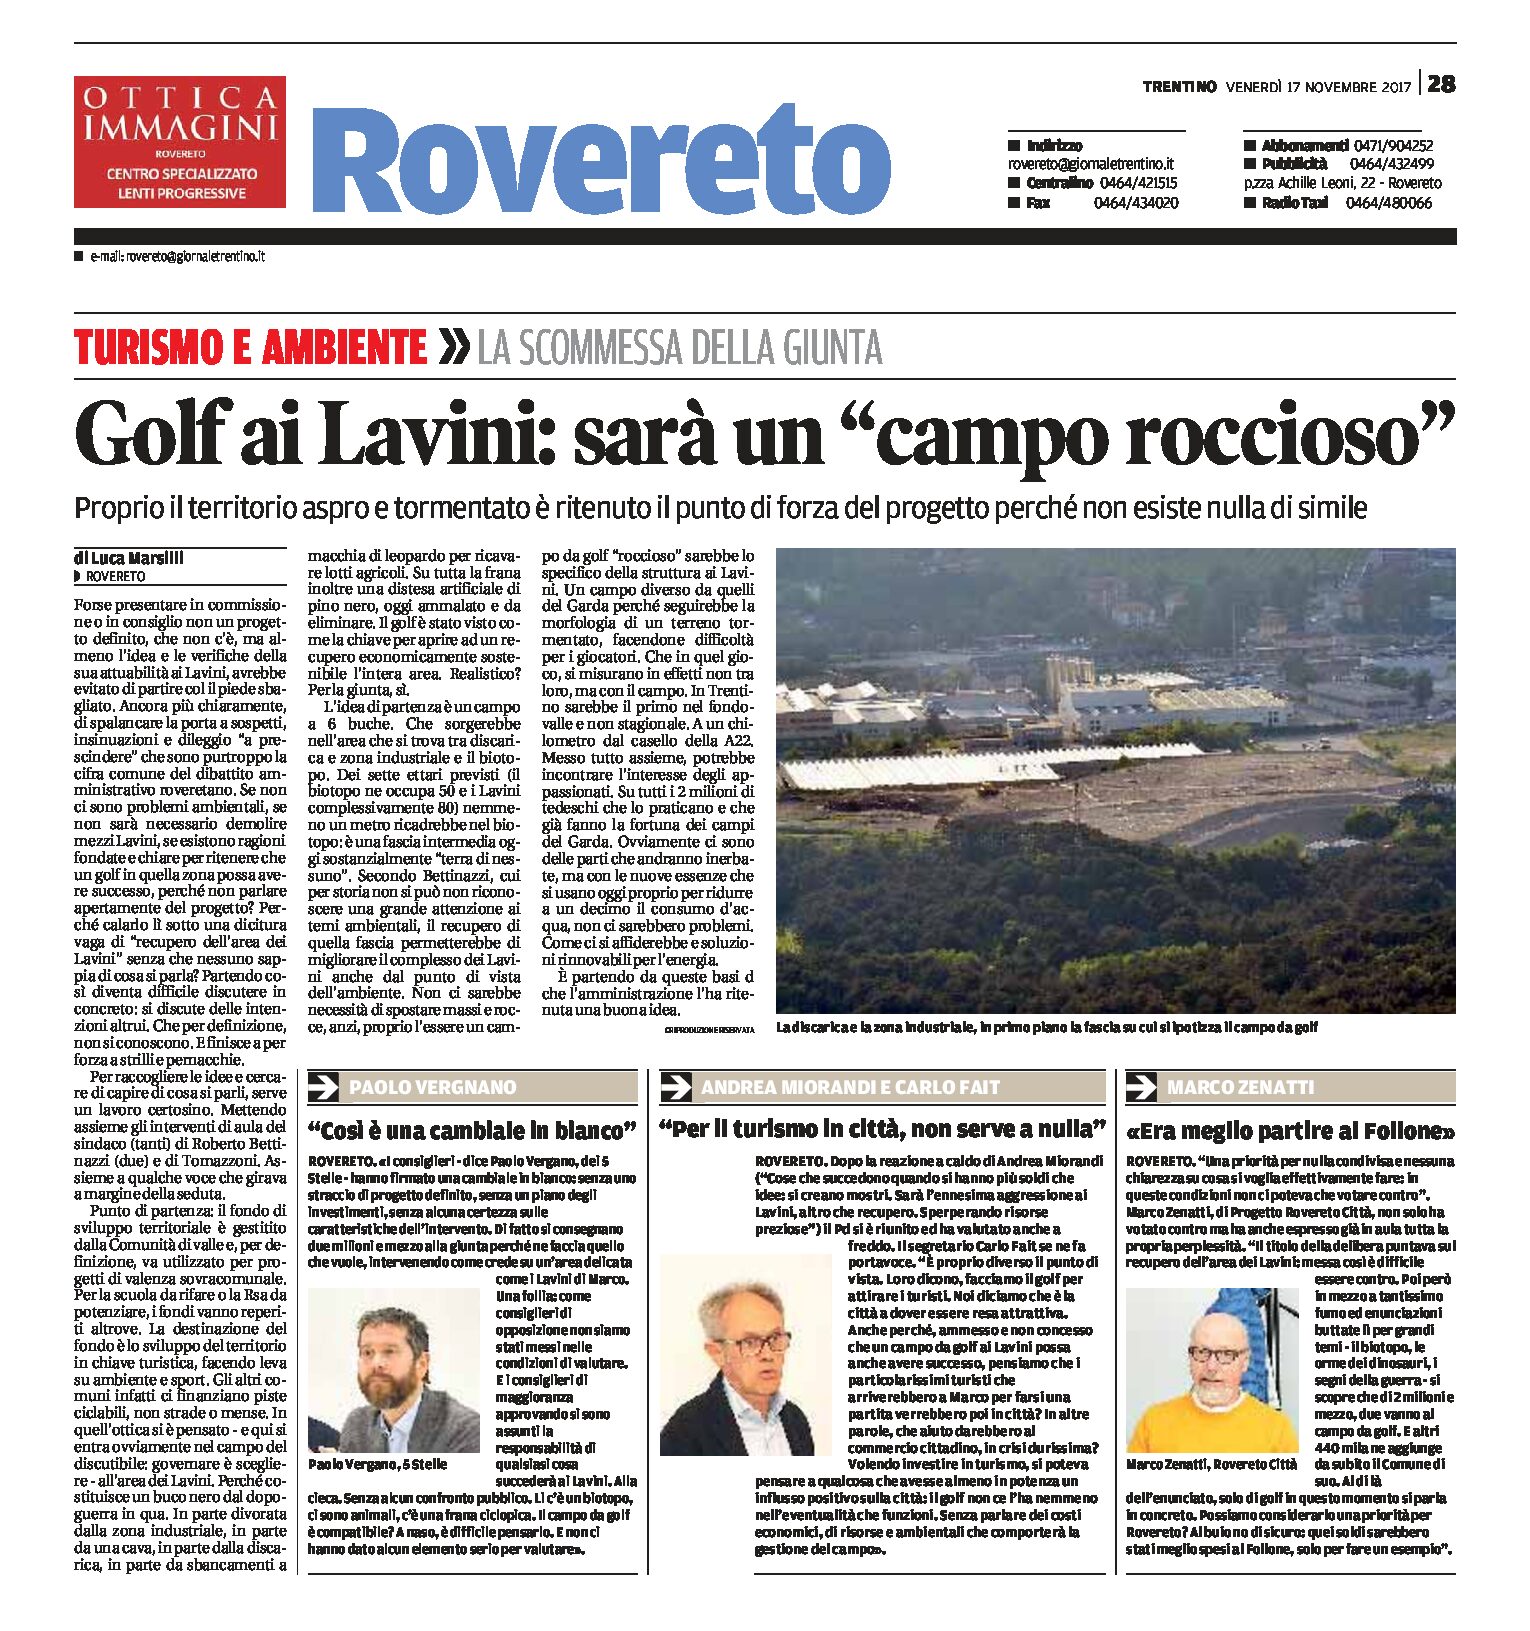 Rovereto: il golf ai Lavini sarà un “campo roccioso”, punto di forza del progetto